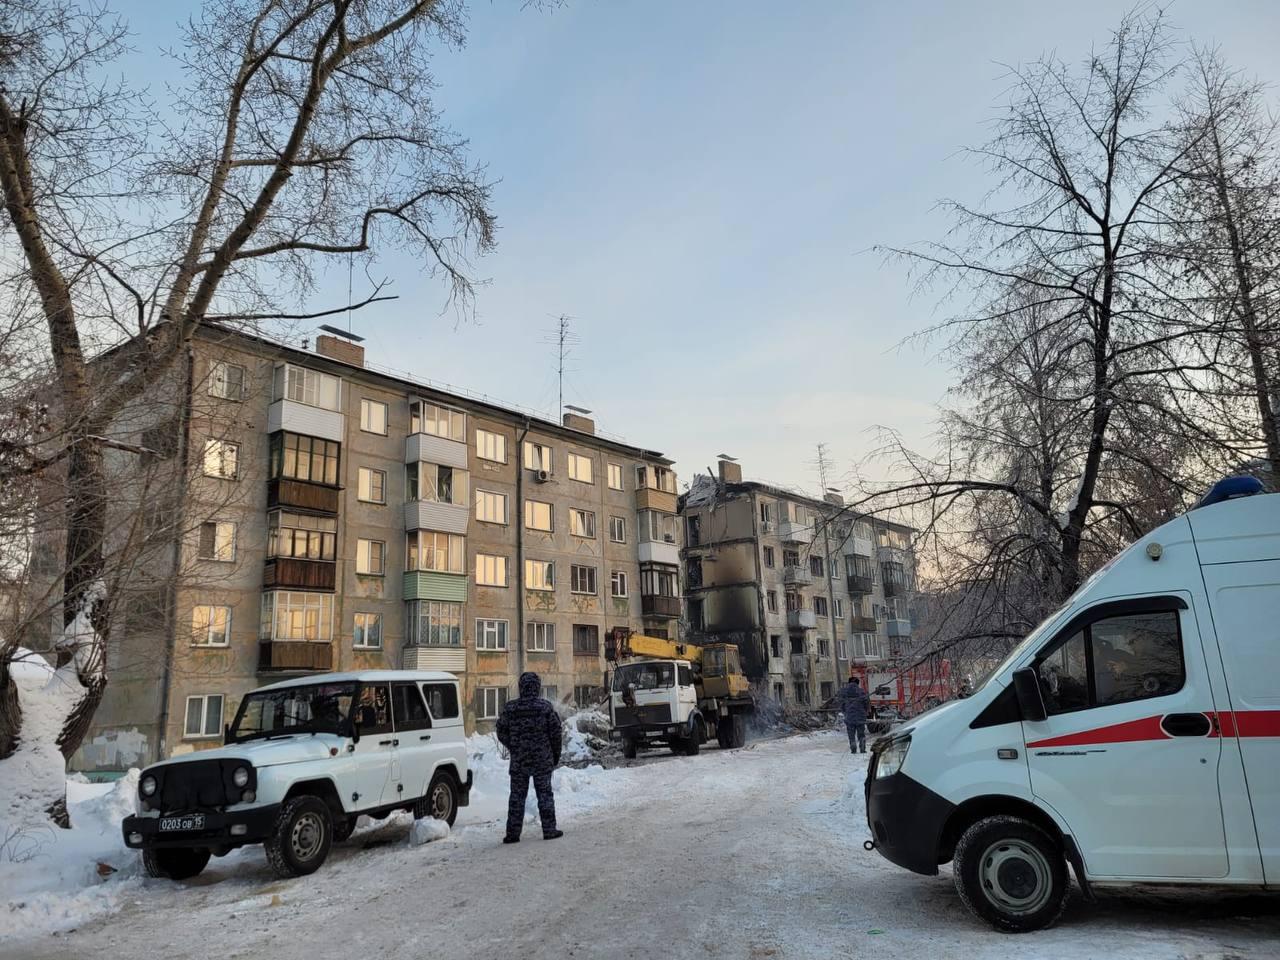 Фото В Новосибирске опубликованы 10 кадров разрушенного дома после взрыва газа 2